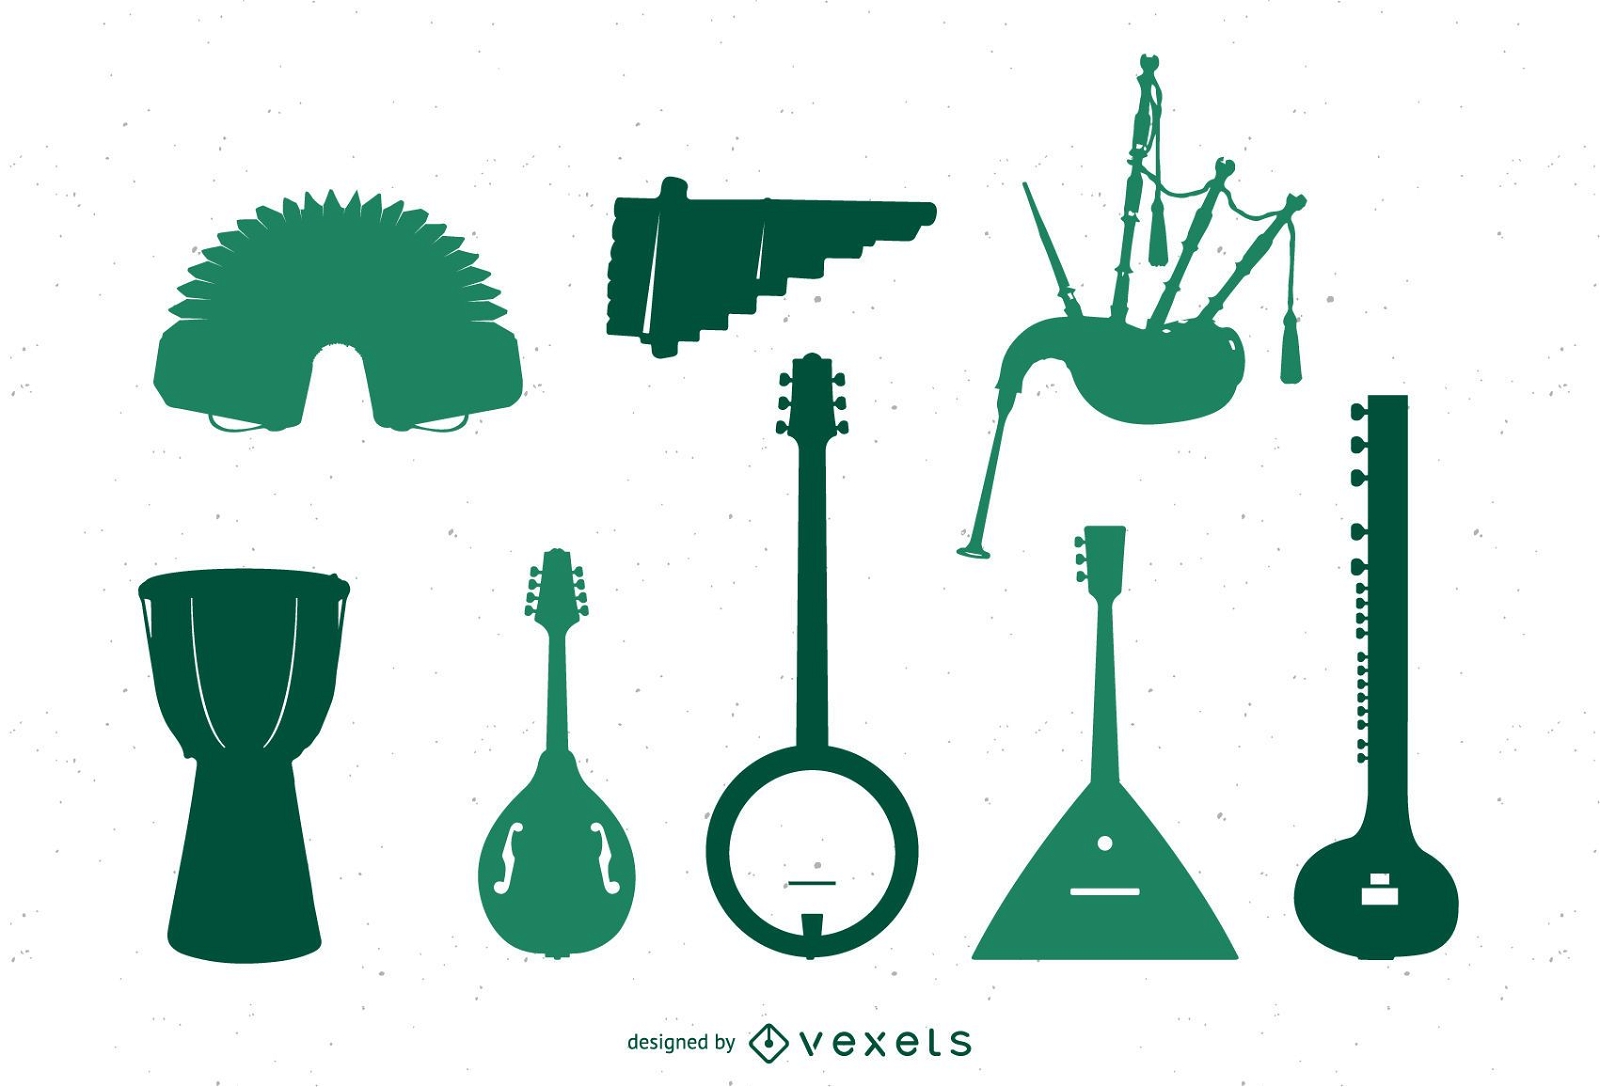 Varios instrumentos musicales del mundo.